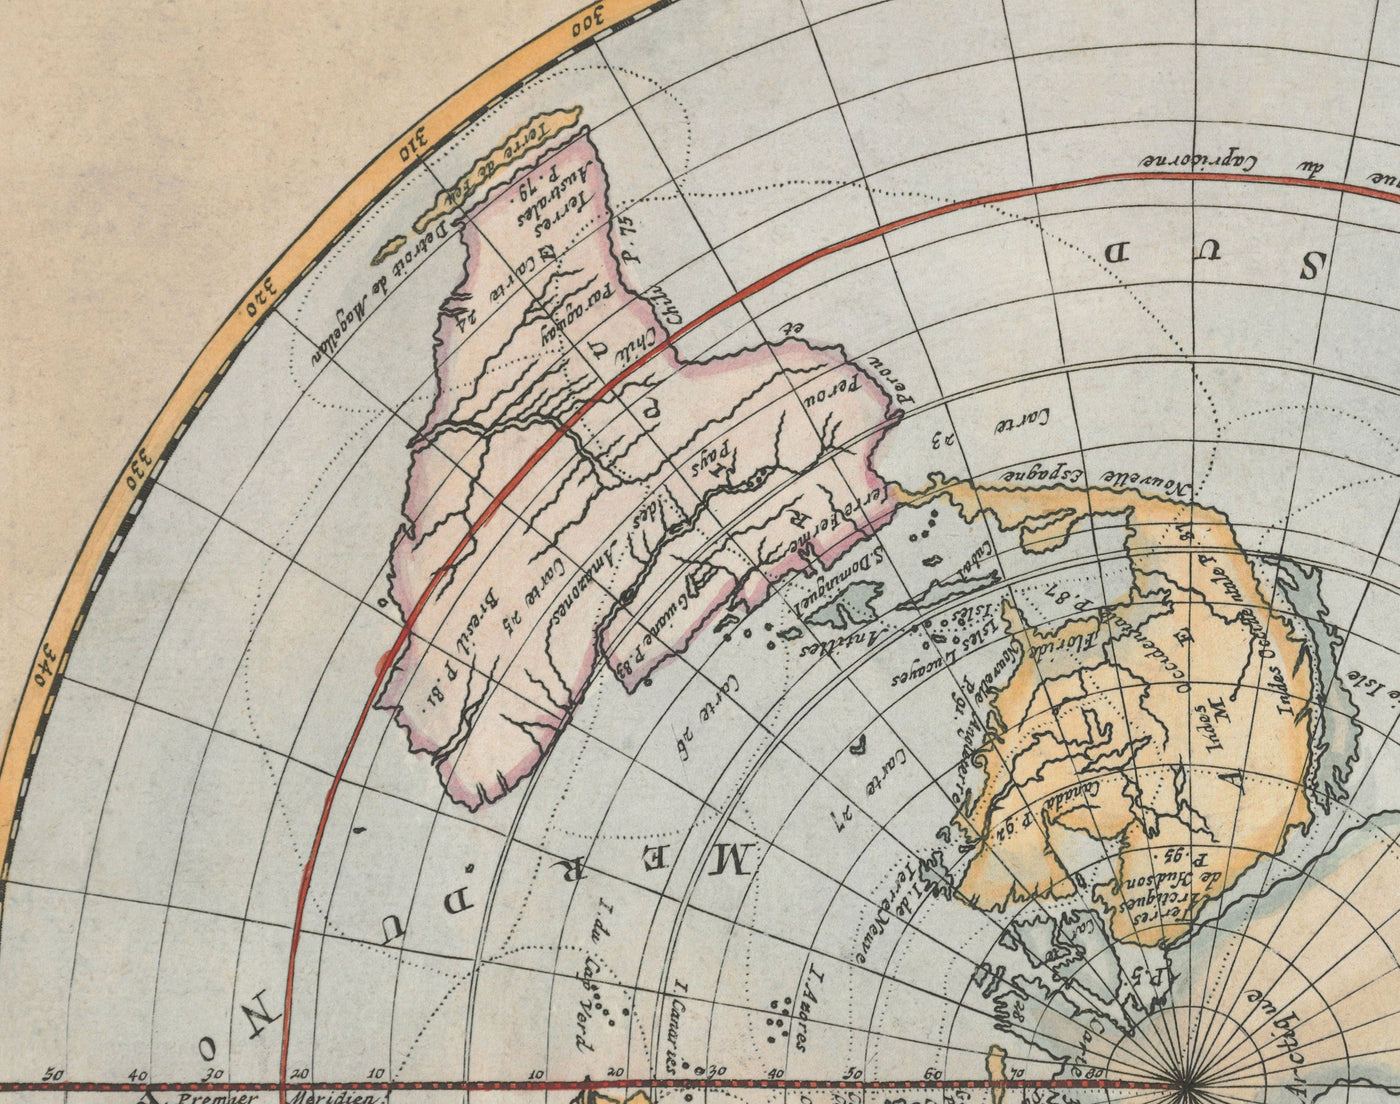 Alte flache Earth-Planisphere-Weltkarte, 1715 von Louis Renard - Cassini-Projektion - Atlas zuckte die Achseln